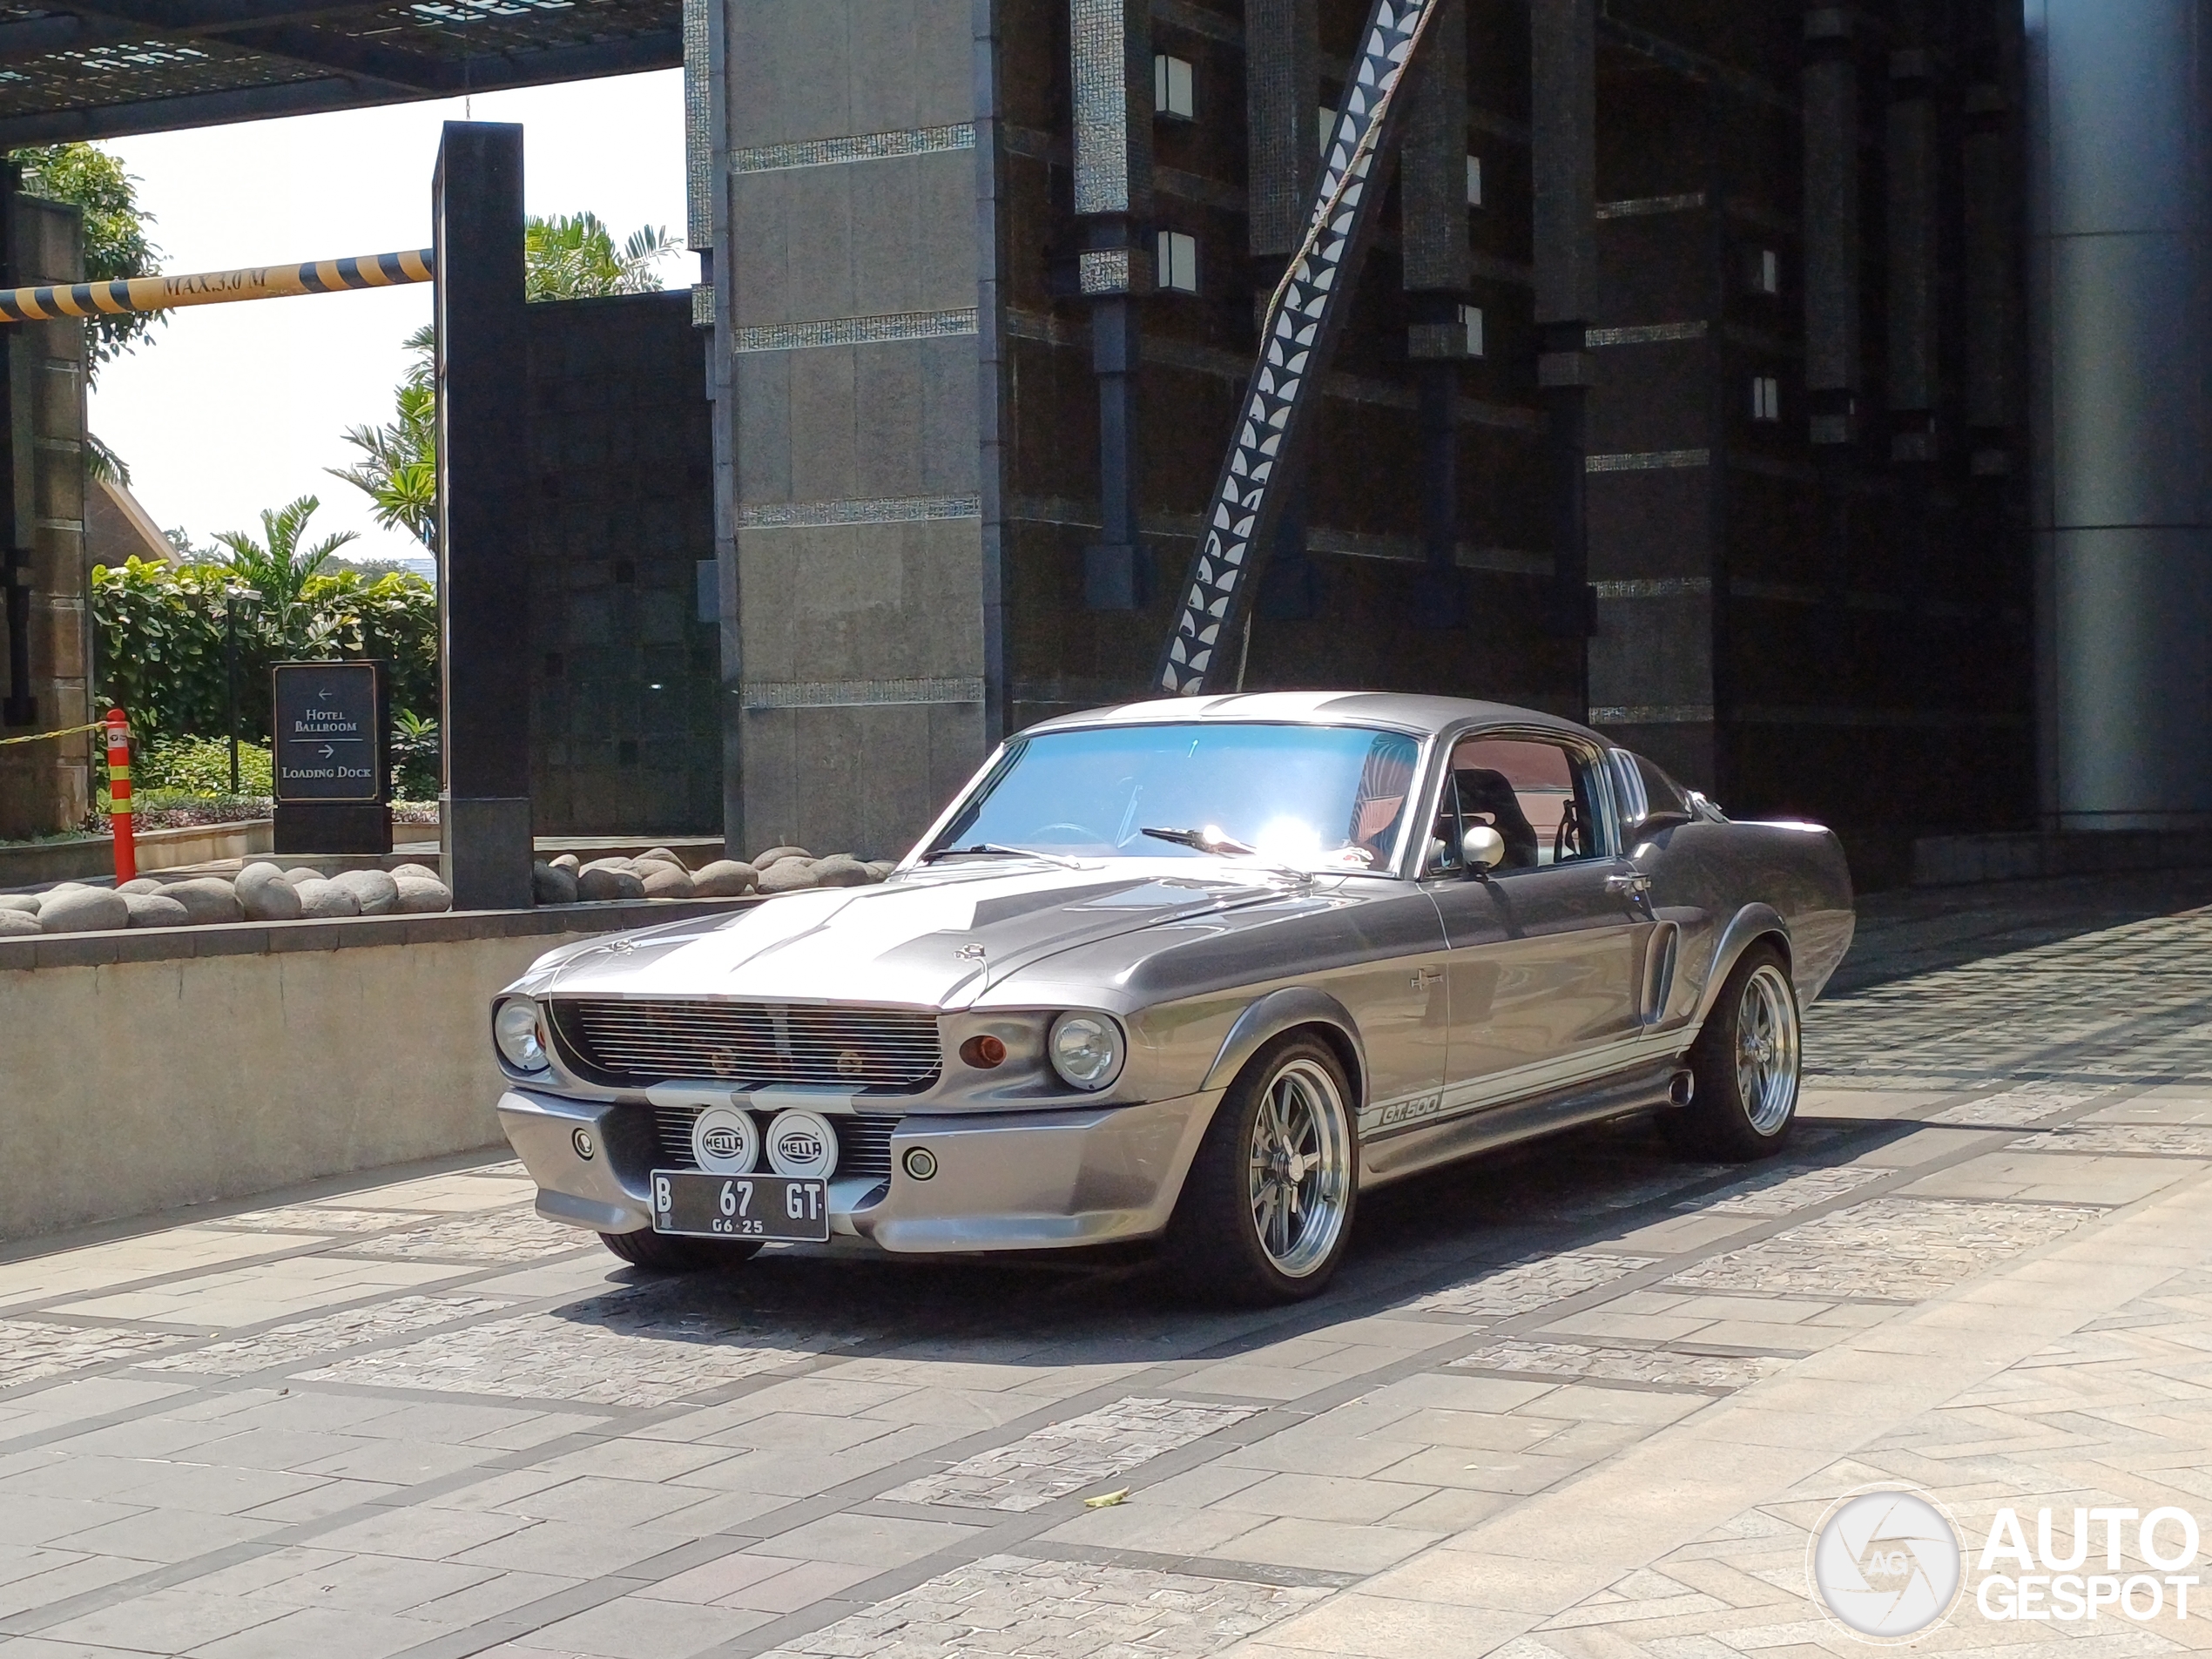 Da li je ovo najlepši Mustang ikada?